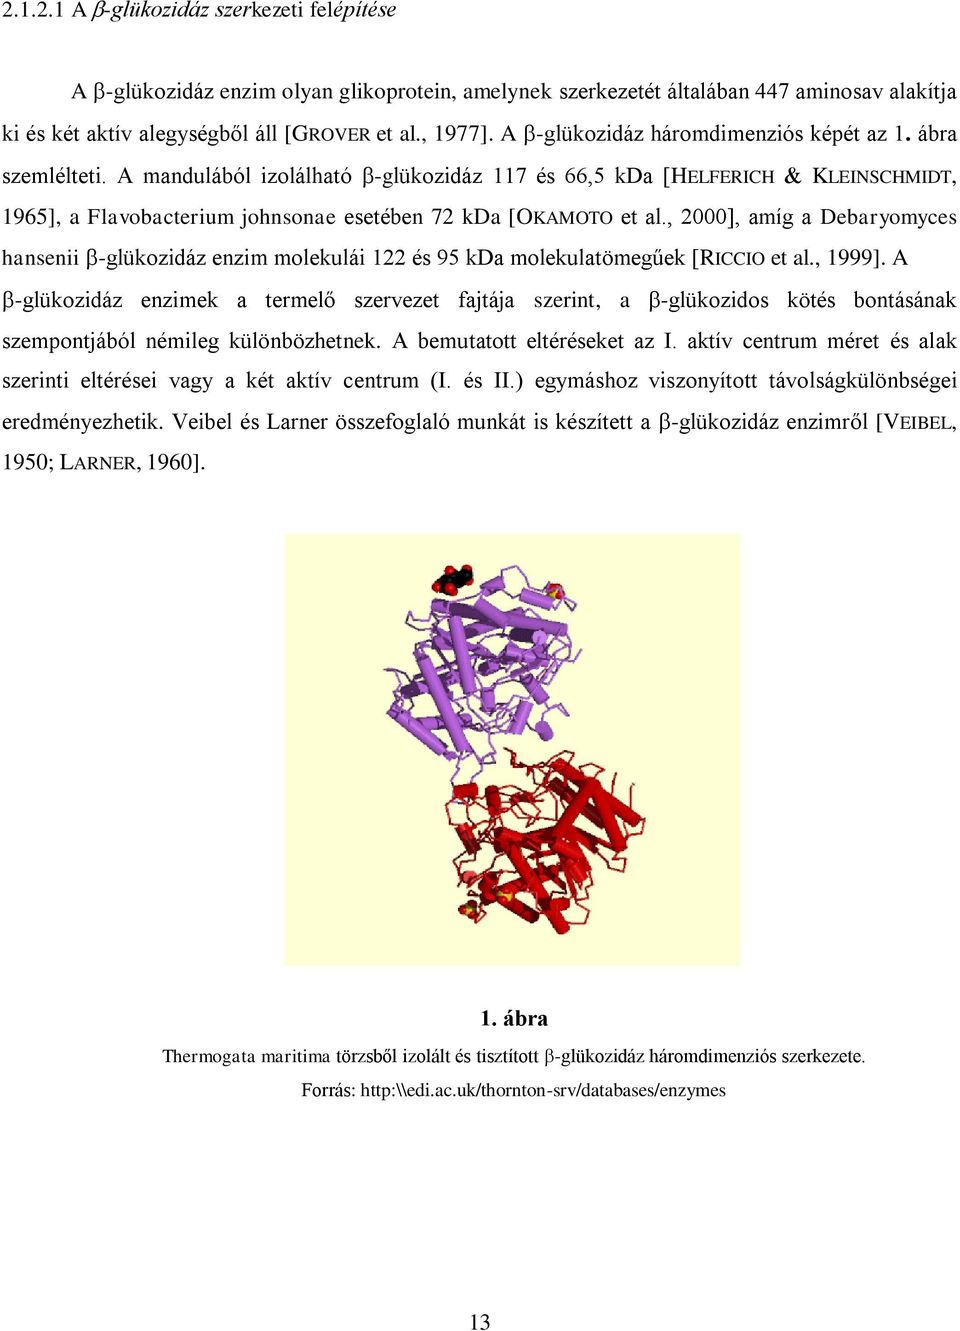 A mandulából izolálható -glükozidáz 117 és 66,5 kda [HELFERICH KLEINSCHMIDT, 1965], a Flavobacterium johnsonae esetében 72 kda [OKAMOTO et al.